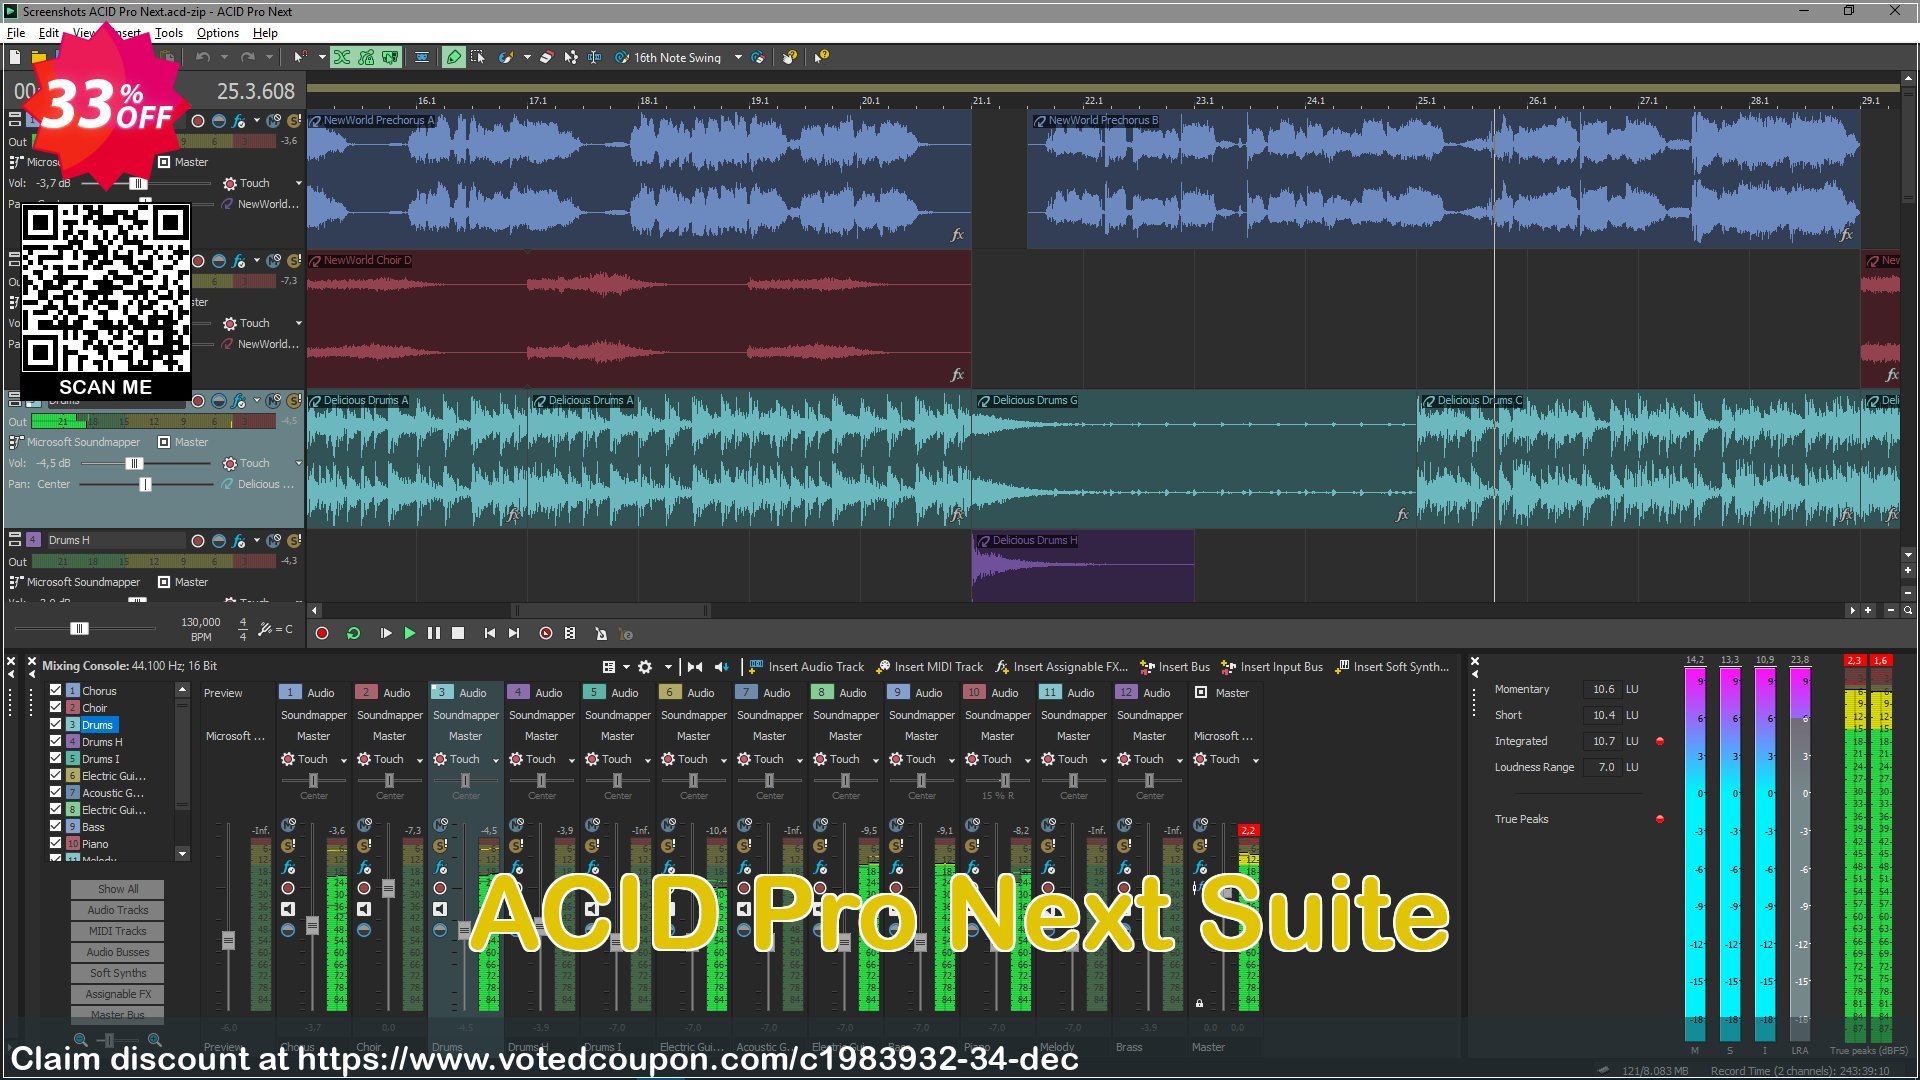 ACID Pro Next Suite